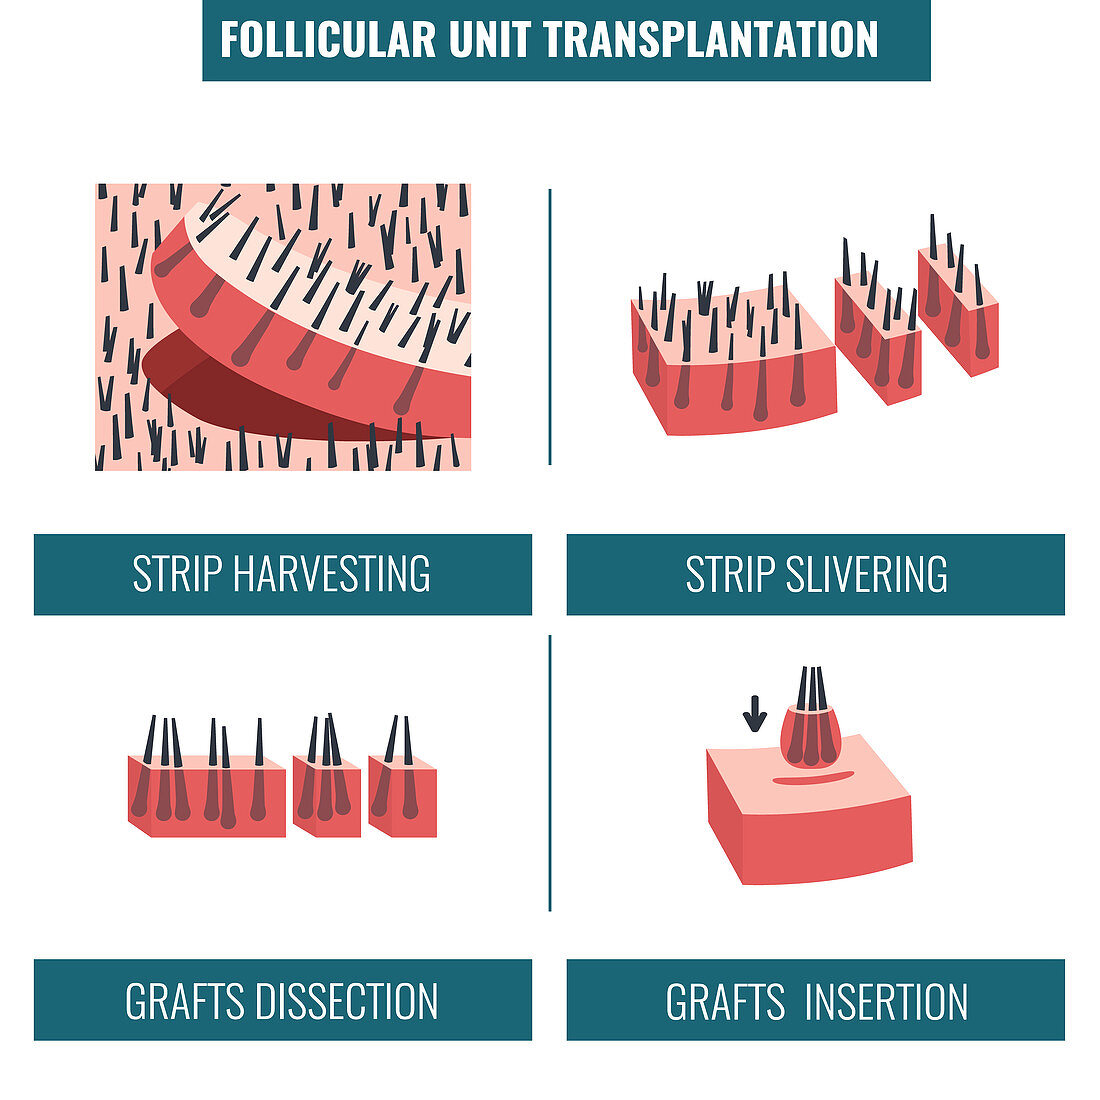 FUT hair transplantation, illustration